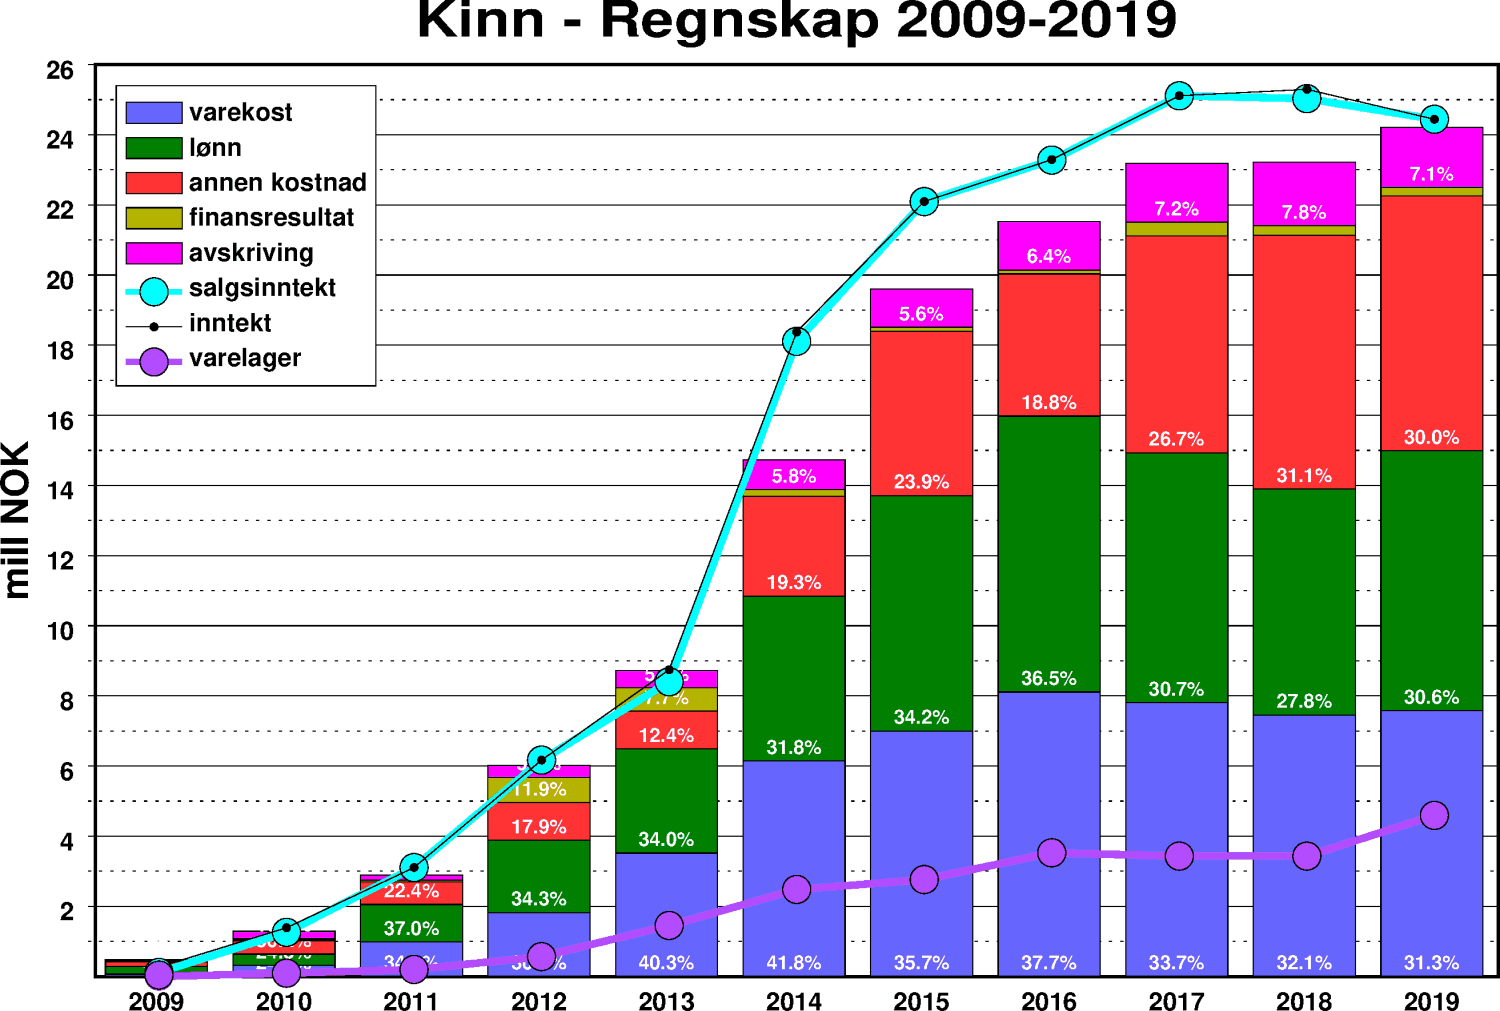 Regnskap for Kinn Bryggeri 2009-2019